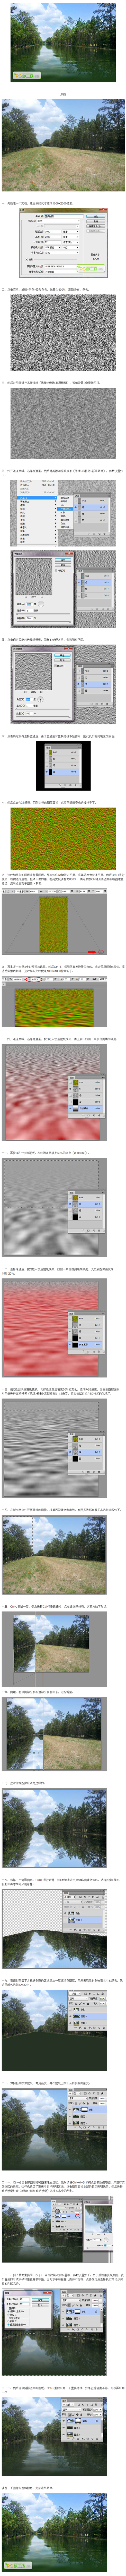 PS置换滤镜制作逼真水面倒影的风景
#采...